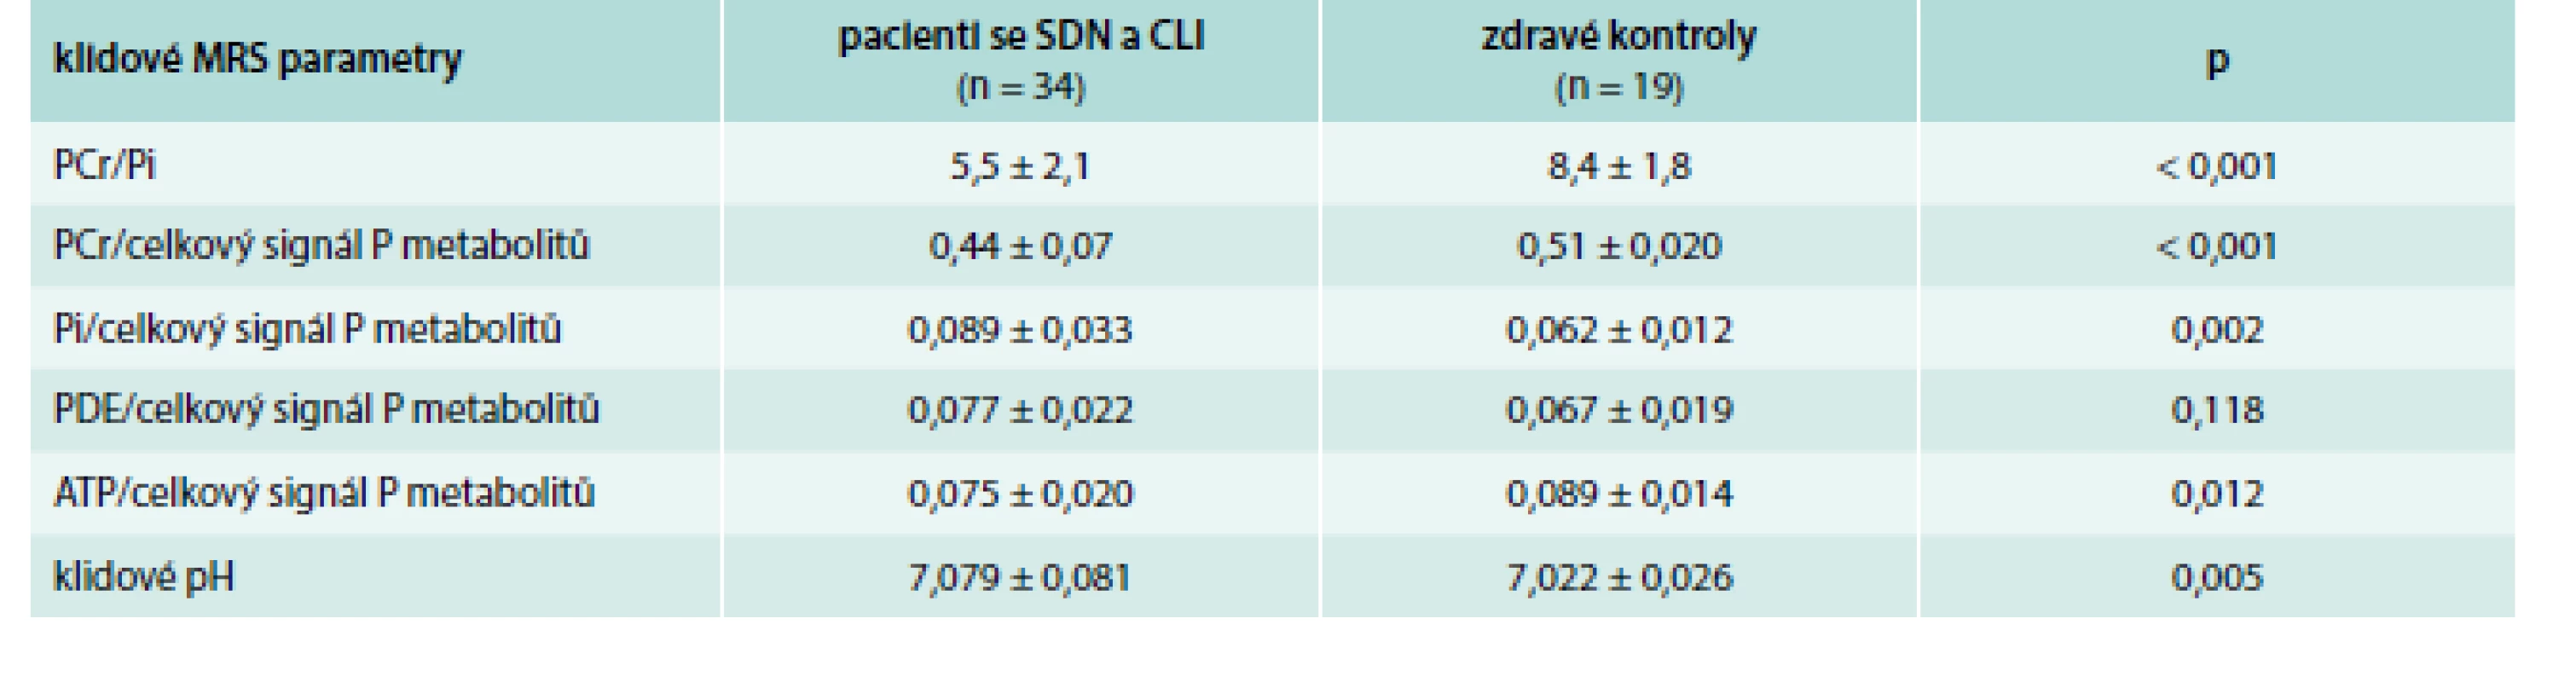 Porovnání parametrů MRS lýtkových svalů mezi pacienty se SDN a CLI a zdravými dobrovolníky – v klidu